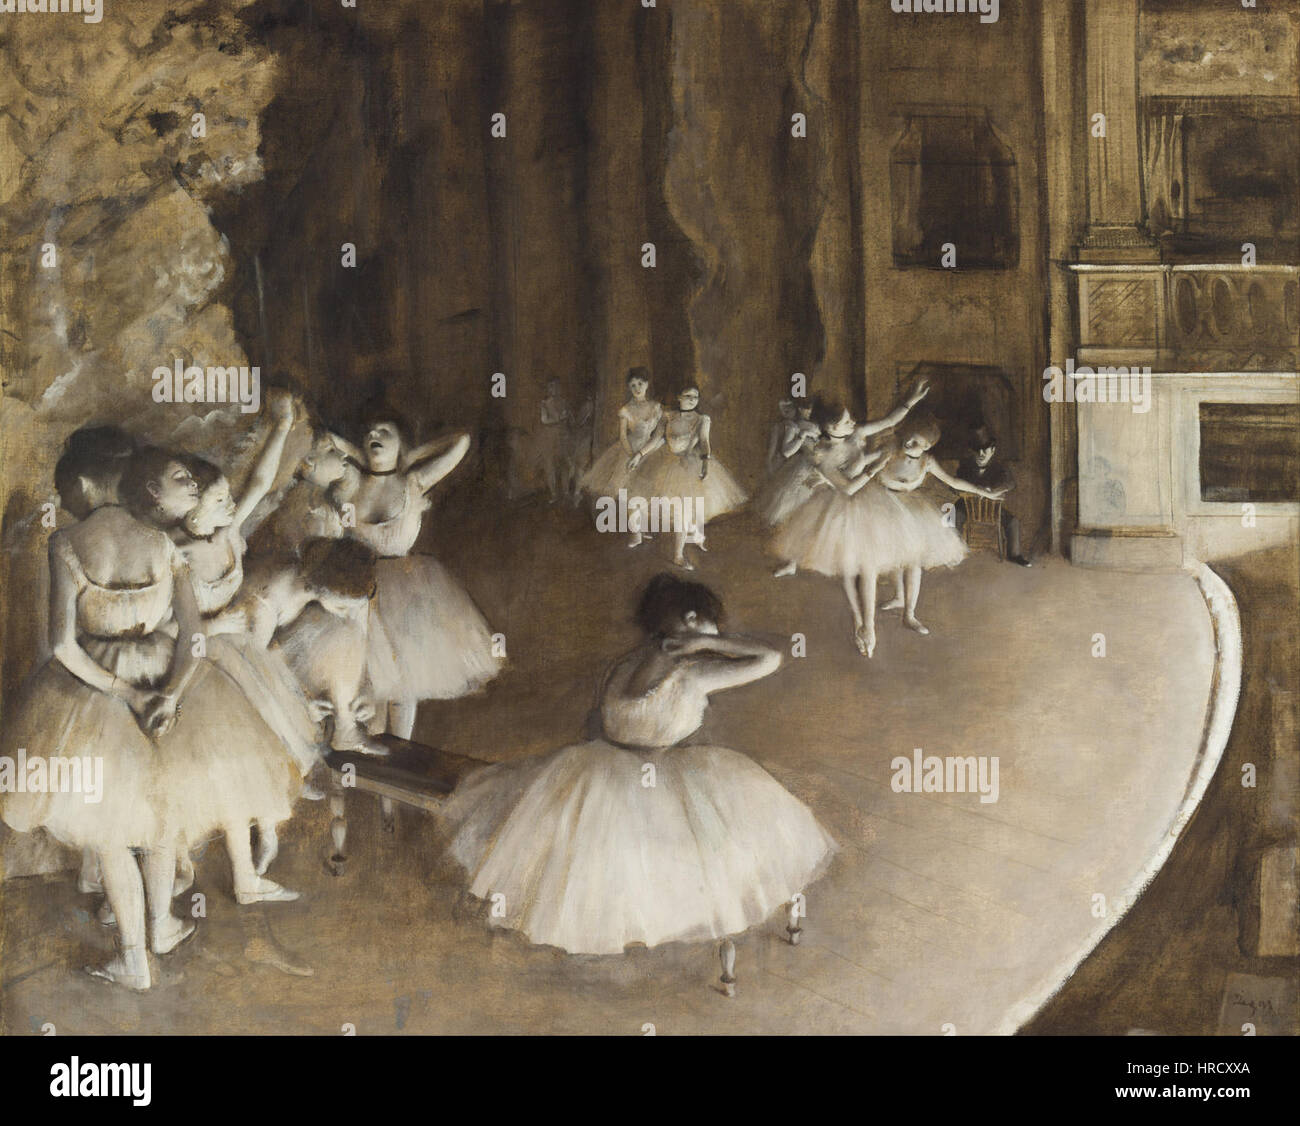 Edgar Degas - Ensayo de ballet en el escenario - Proyecto de arte de Google Foto de stock